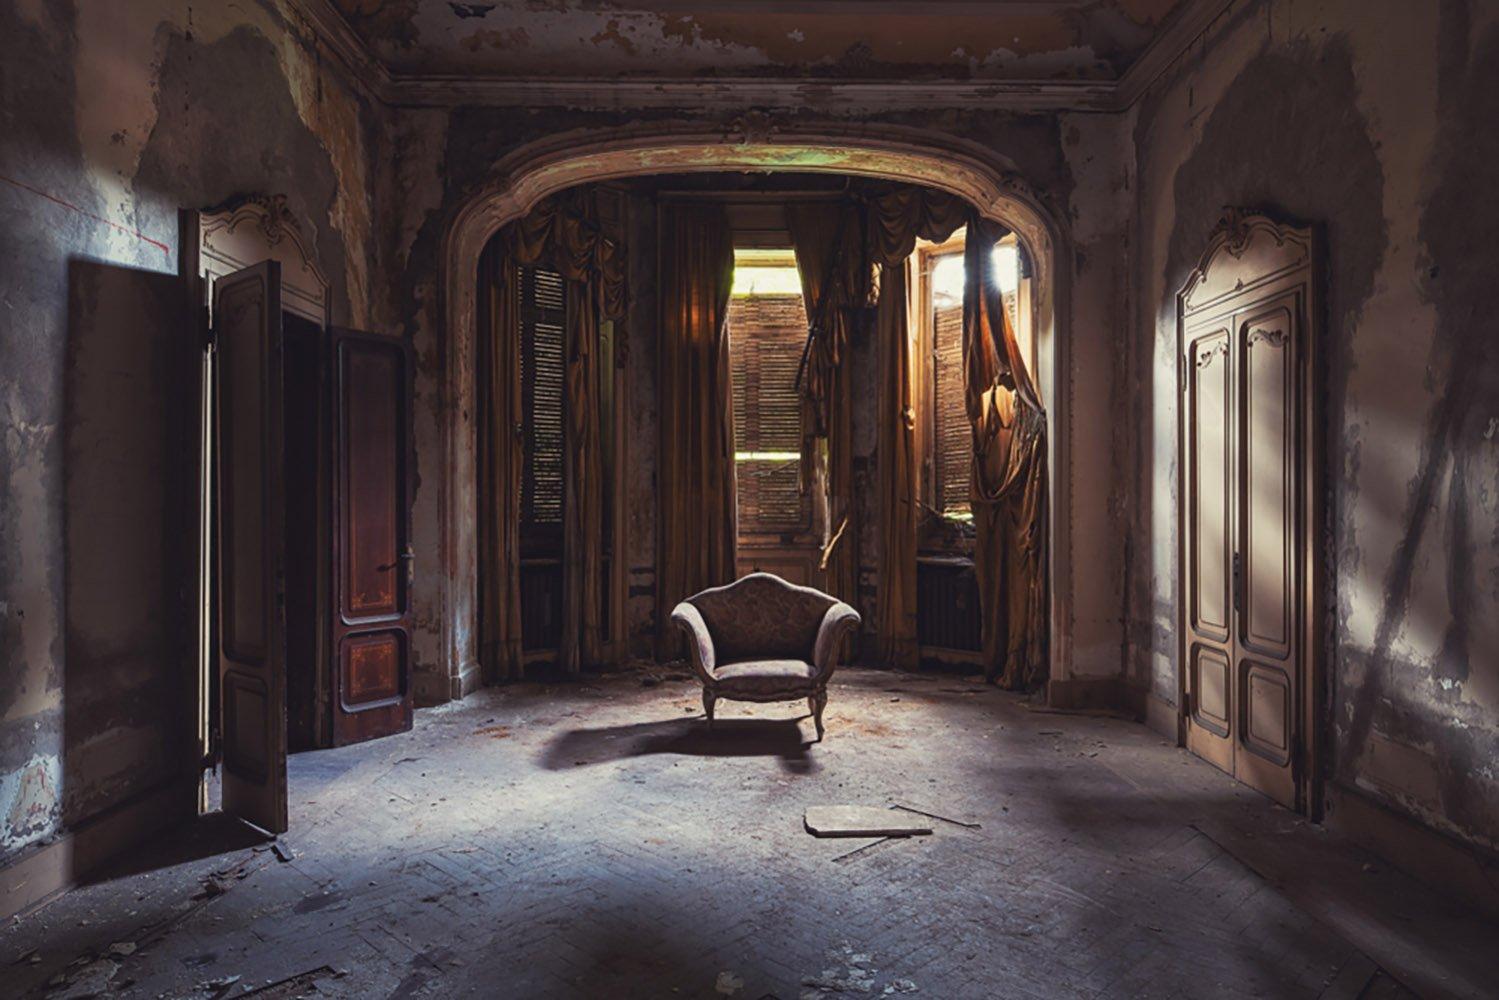 Isolamento ist eine Fotografie der zeitgenössischen Künstlerin Gina Soden in limitierter Auflage. Sie ist Teil der Reihe "How Long Is Now?".

Dieses Foto wird nur als ungerahmter Abzug verkauft. Sie ist in 2 Größen erhältlich:
*44,64 cm × 64,96 cm